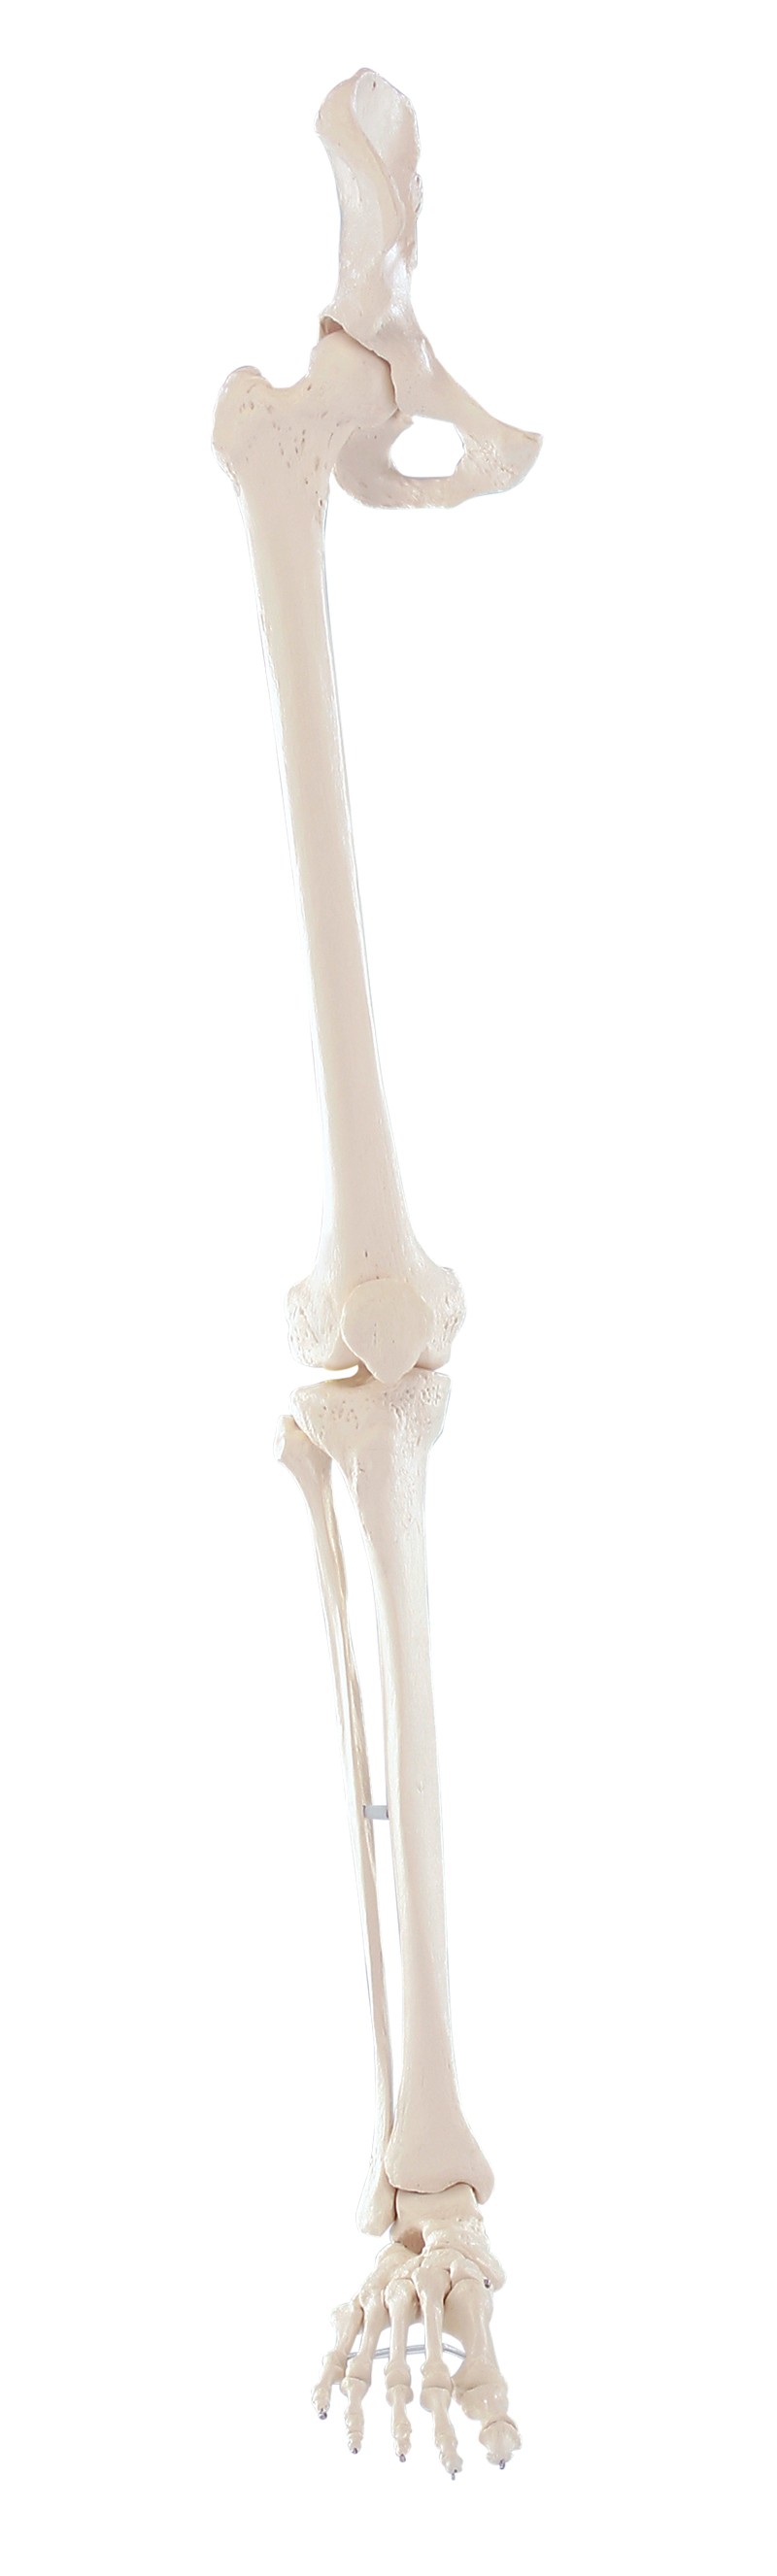 Szkielet kończyny dolnej człowieka + obręcz + elastyczna stopa - Image no.: 1